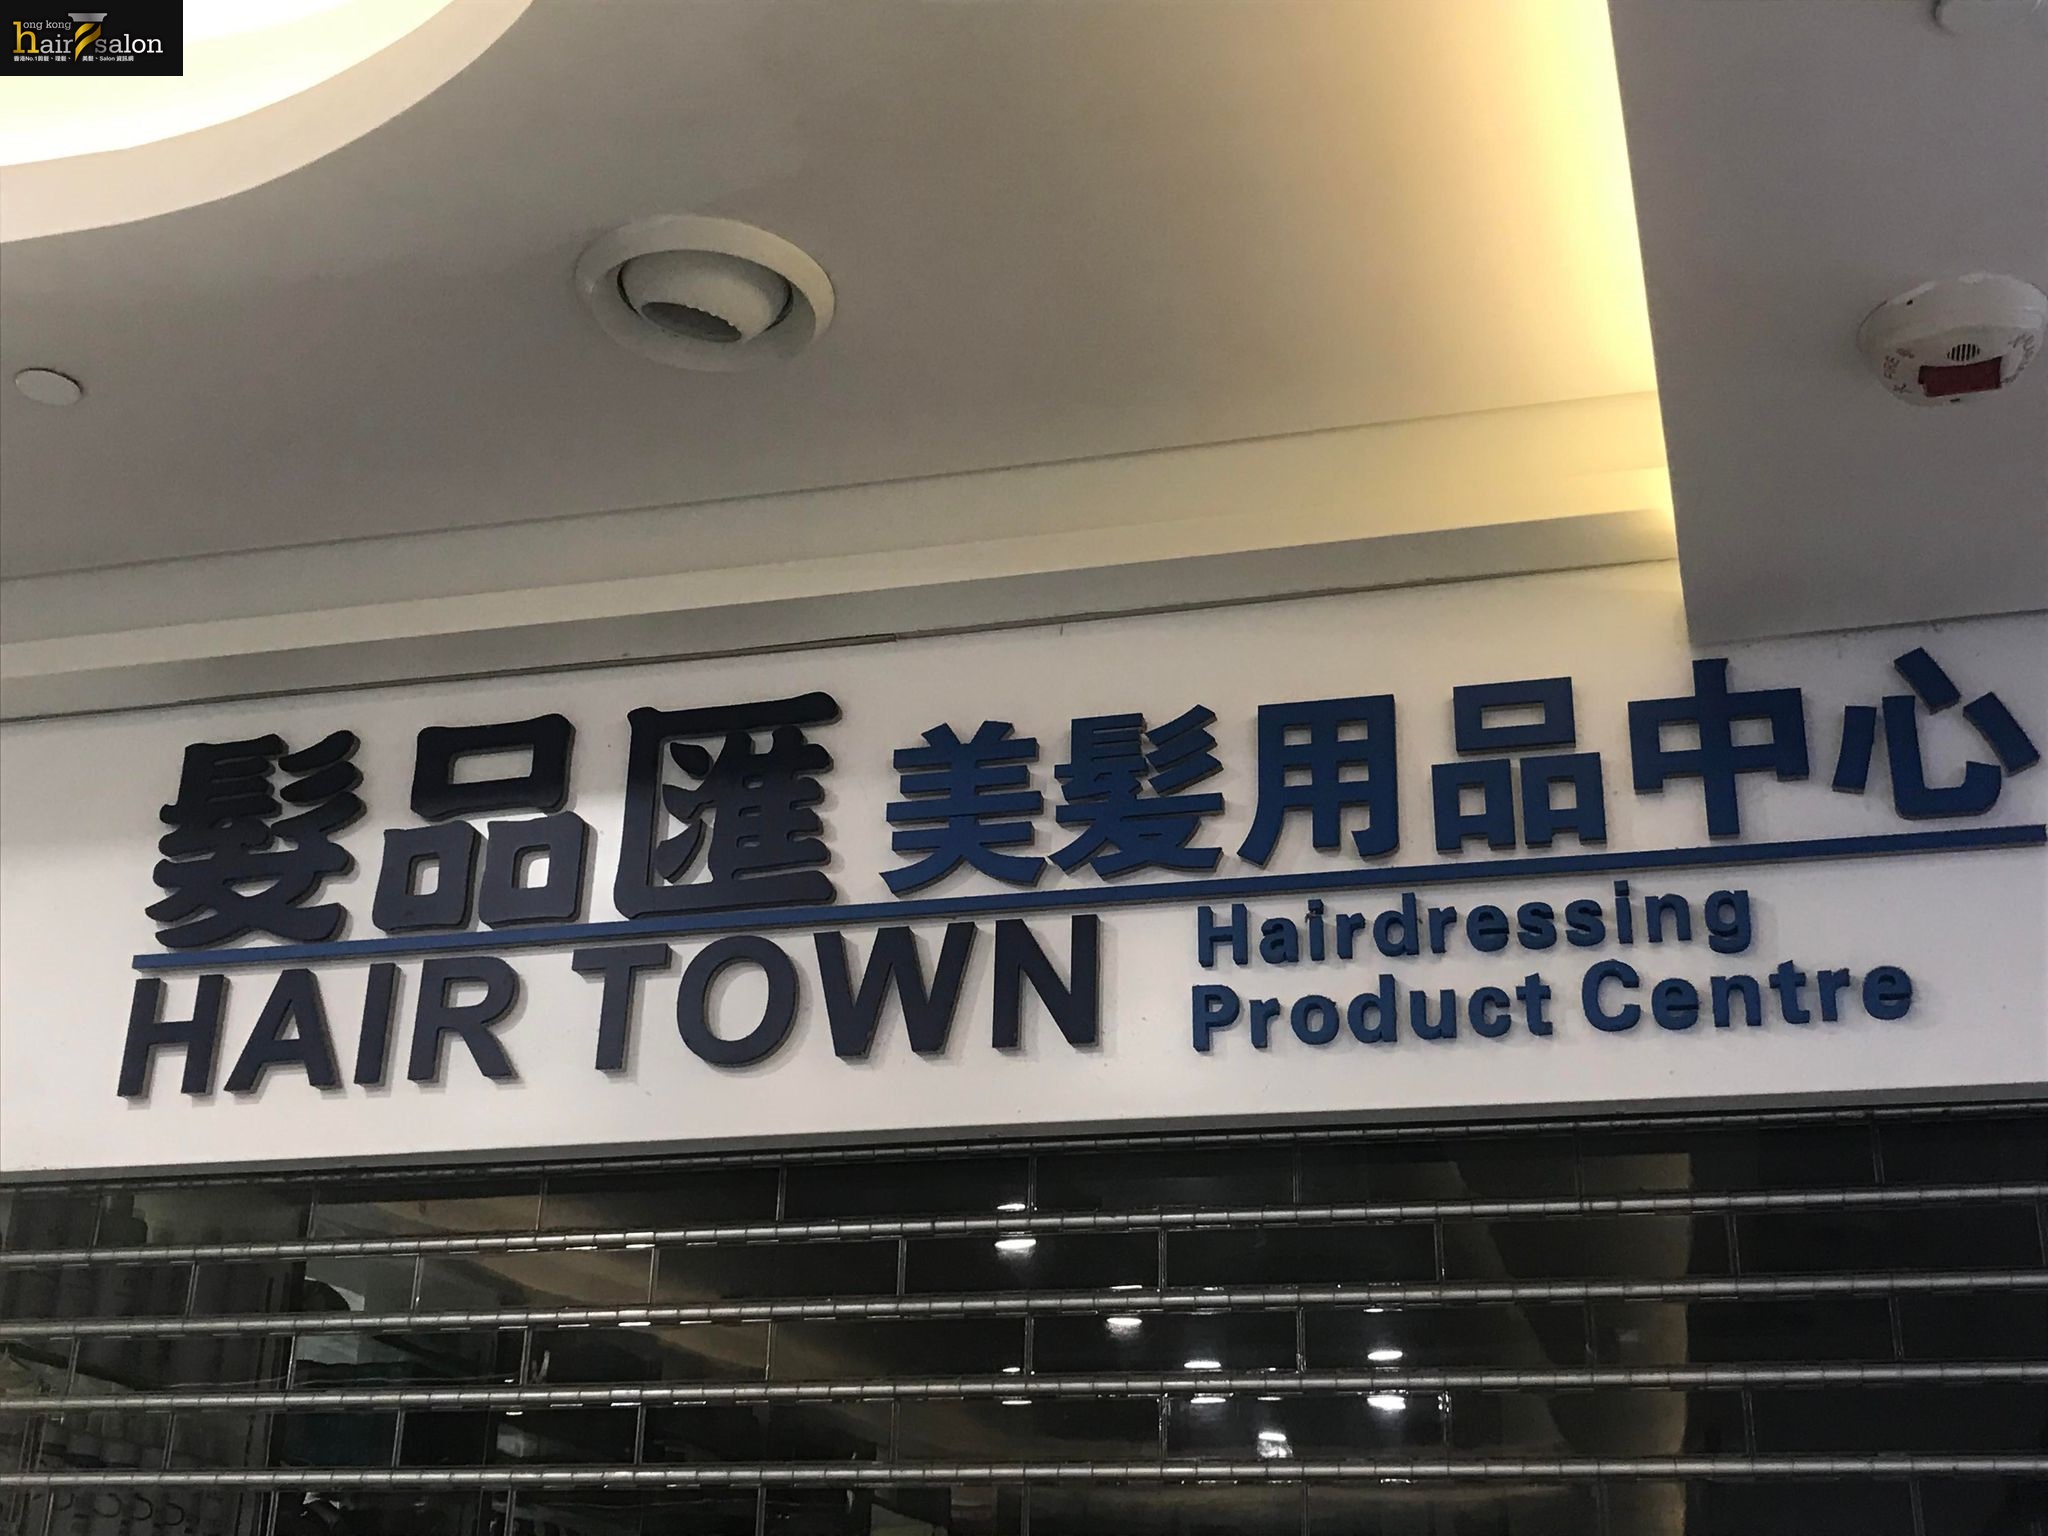 美发用品: 髮品匯 Hair Town - 美髮用品中心